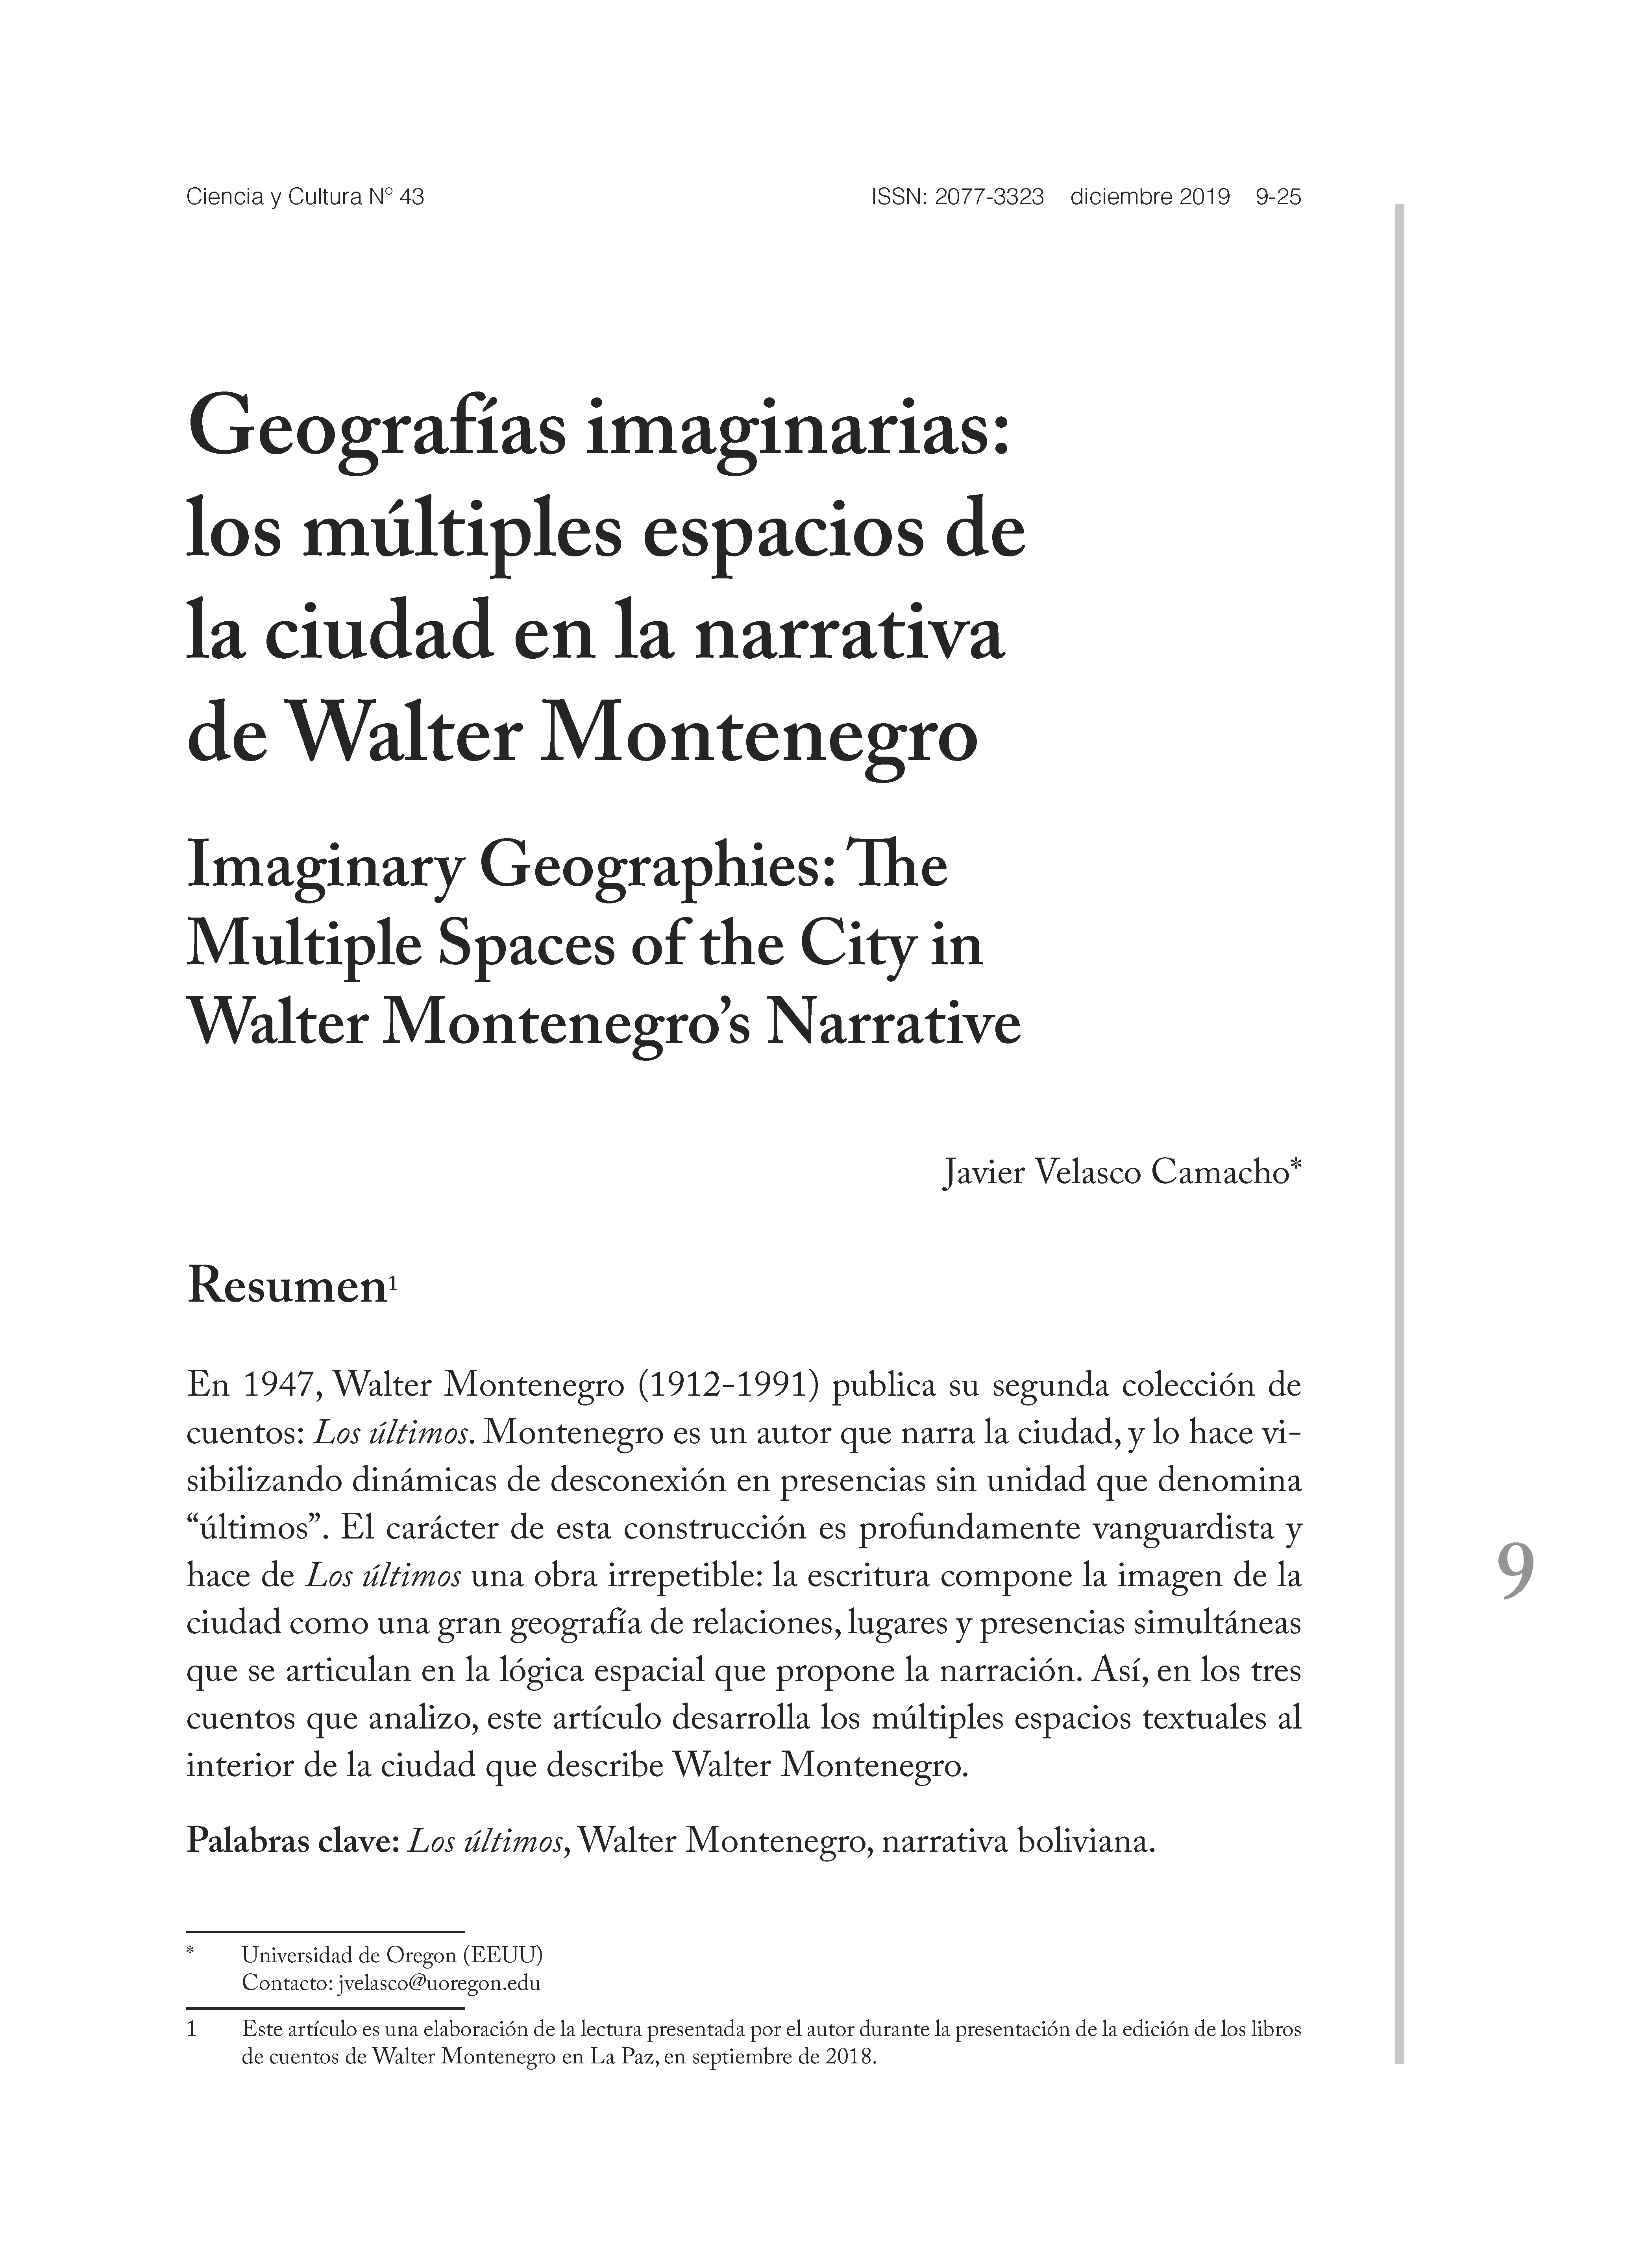 Geografías imaginarias: los múltiples espacios de la ciudad en la narrativa de Walter Montenegro